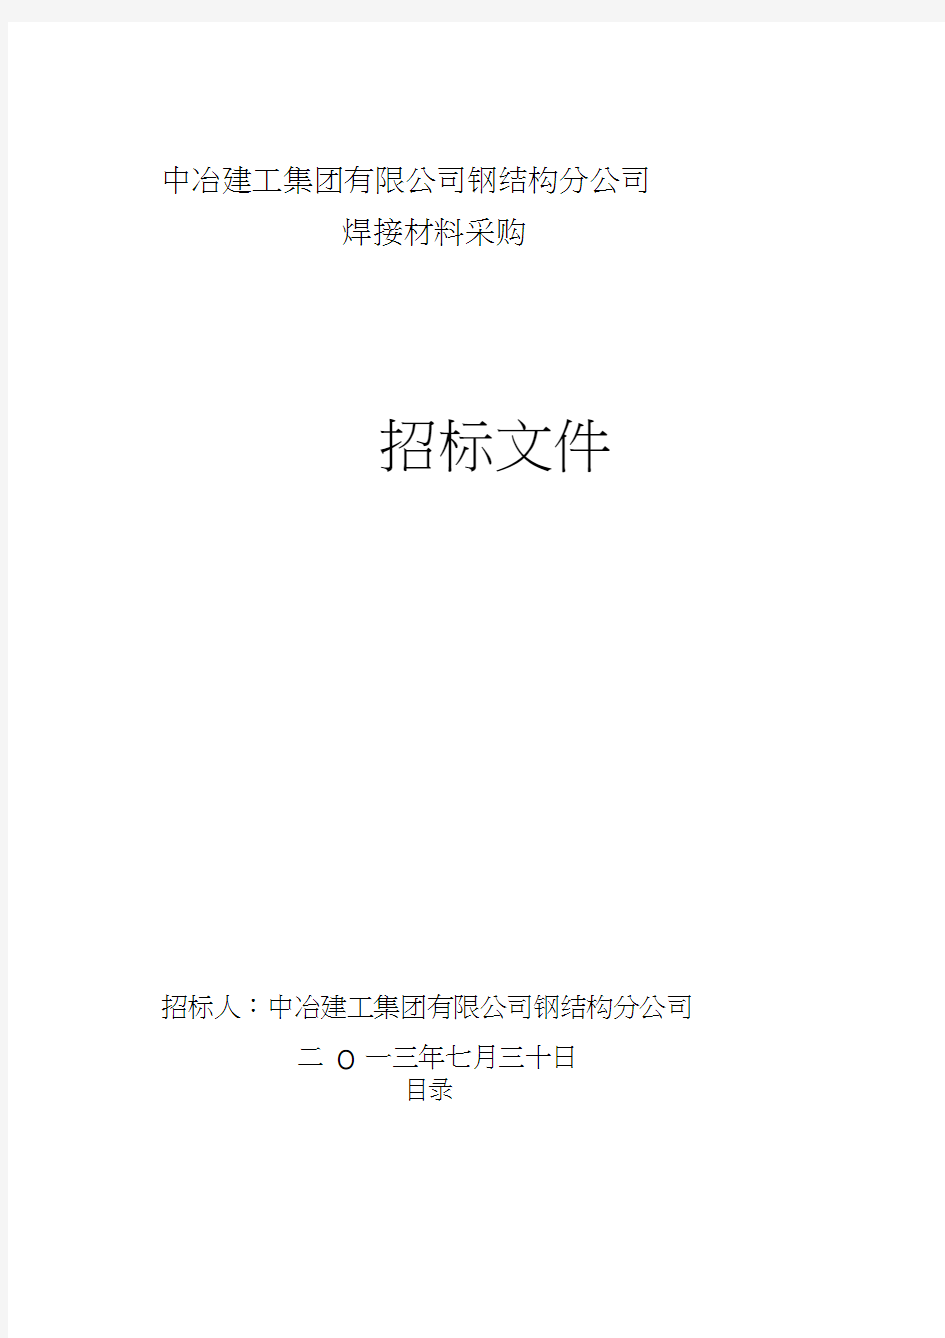 材料采购类-招标文件最新范本(2013730)